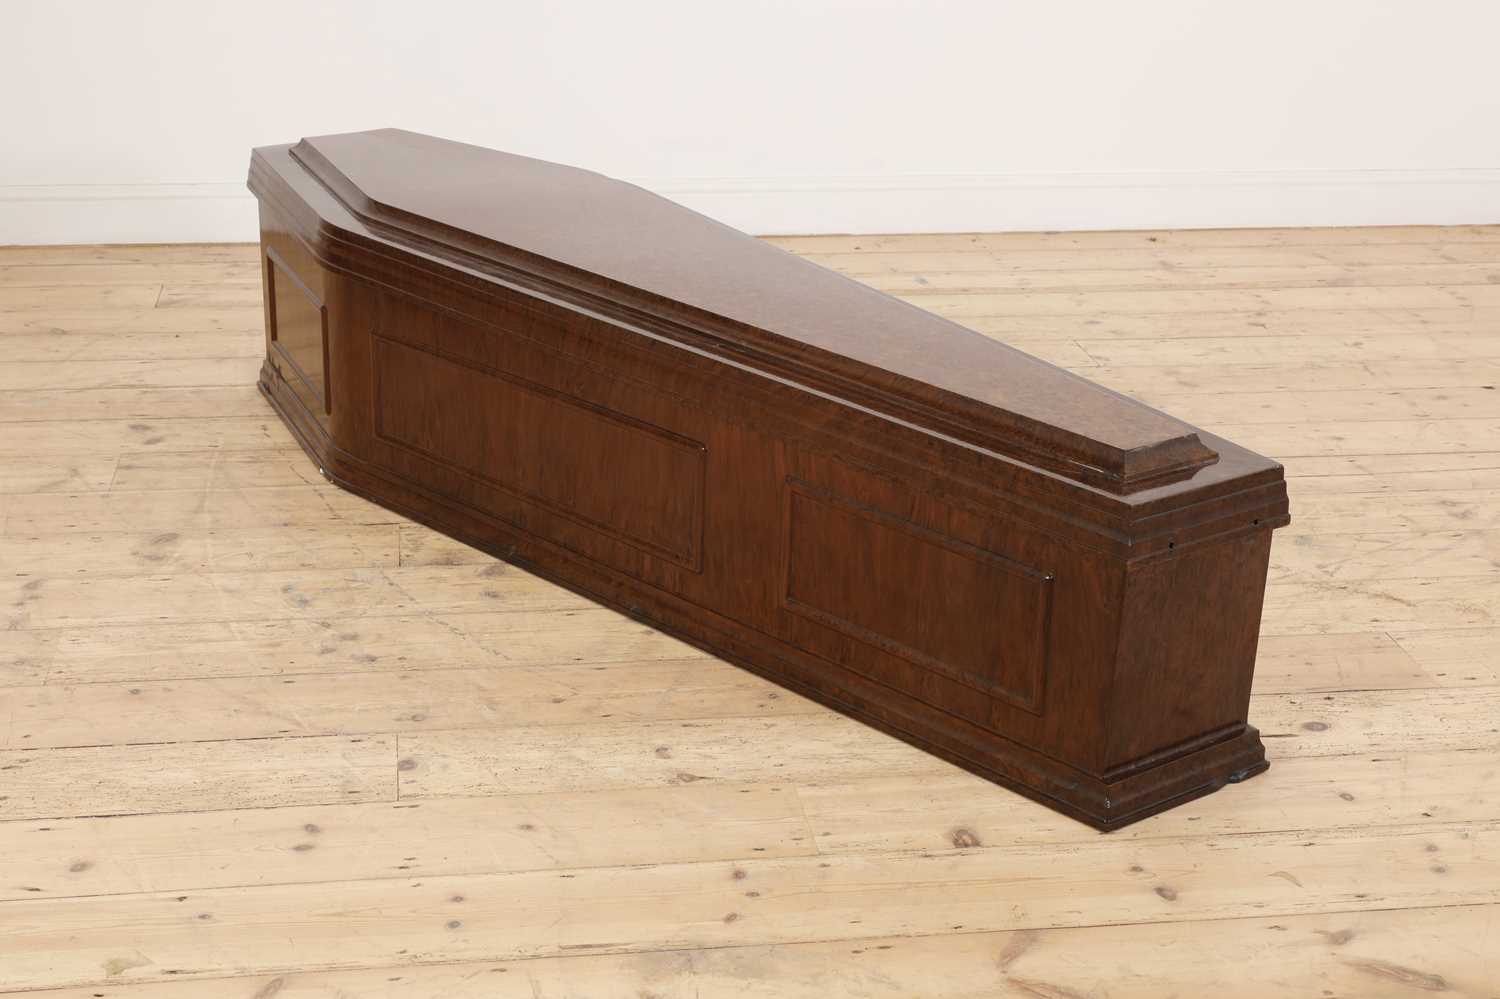 A rare full-sized Bakelite coffin